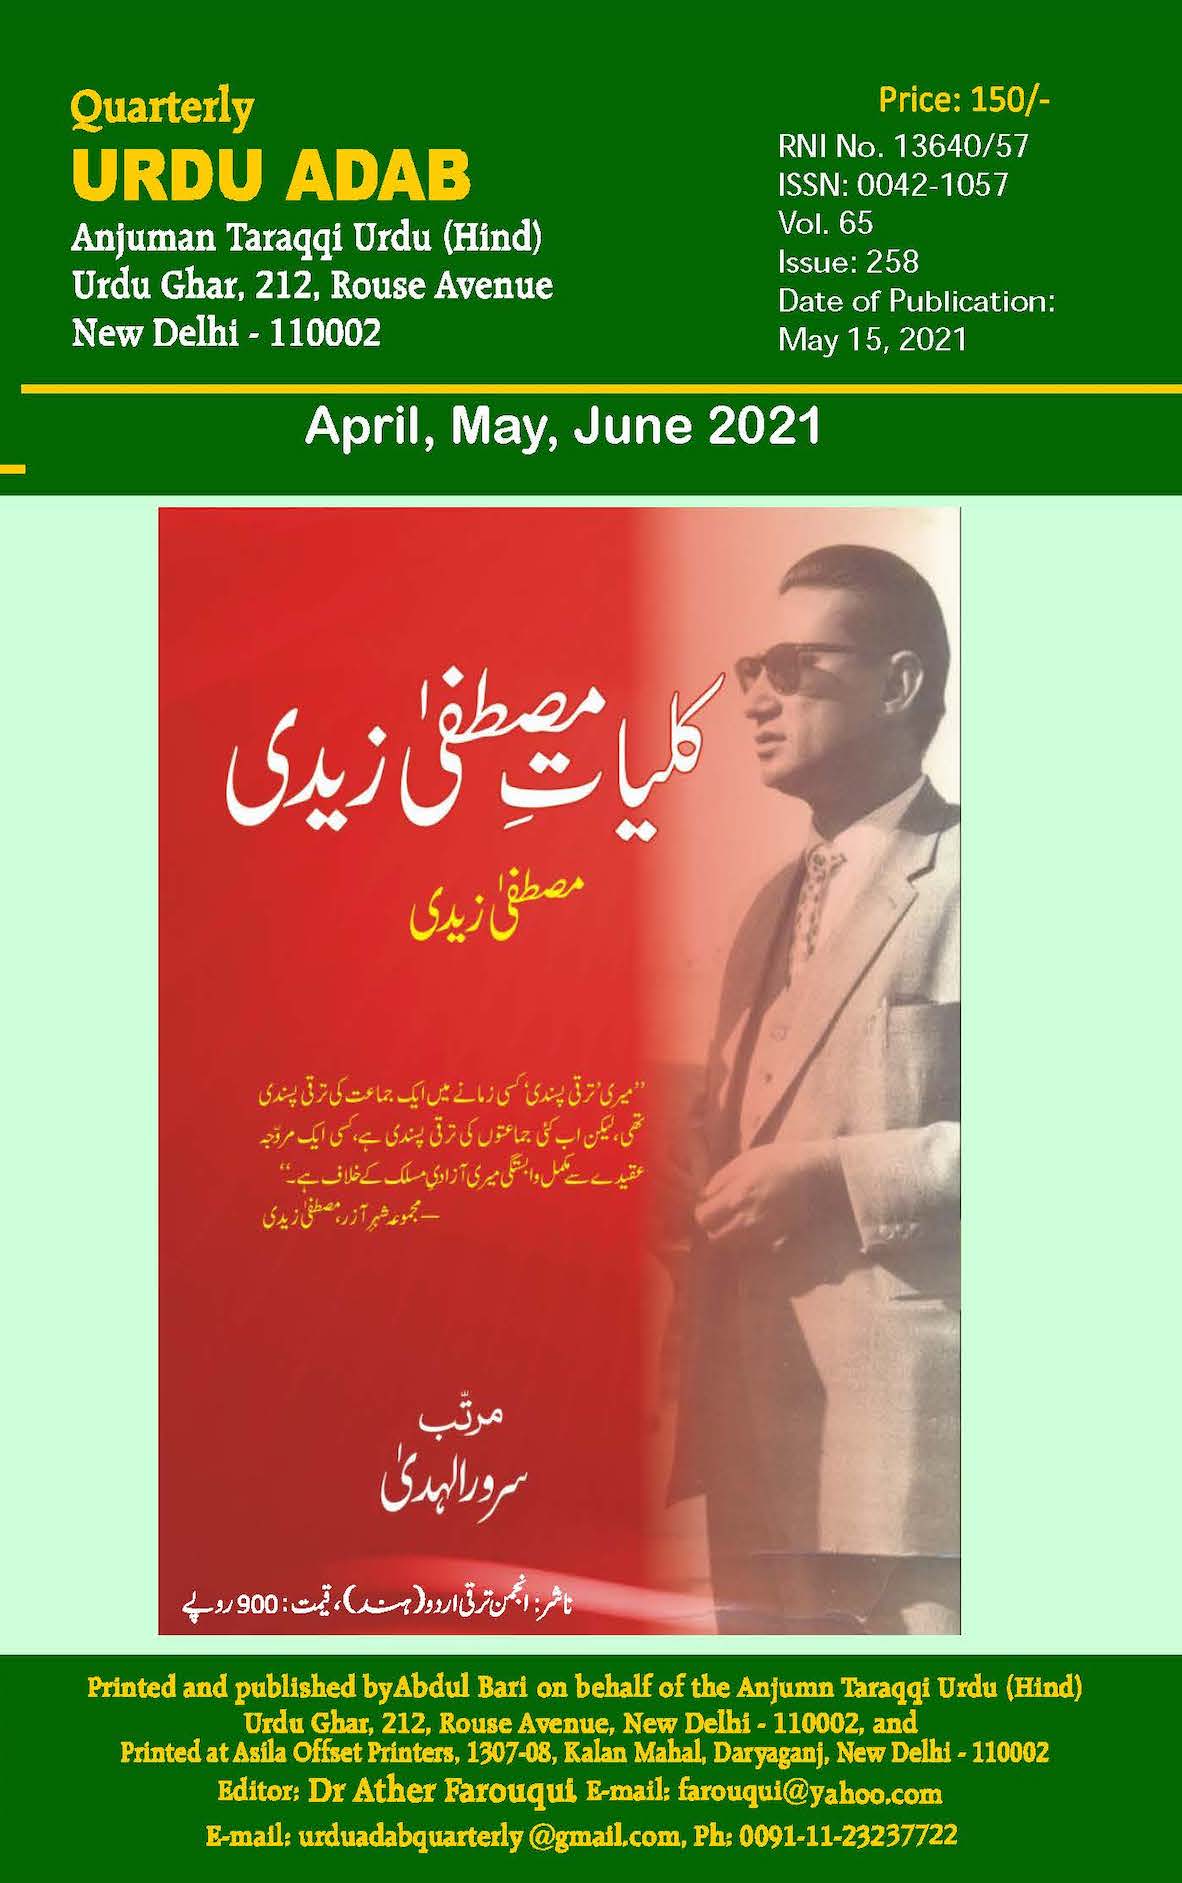 Urdu Adab Quarterly Apr-June'21